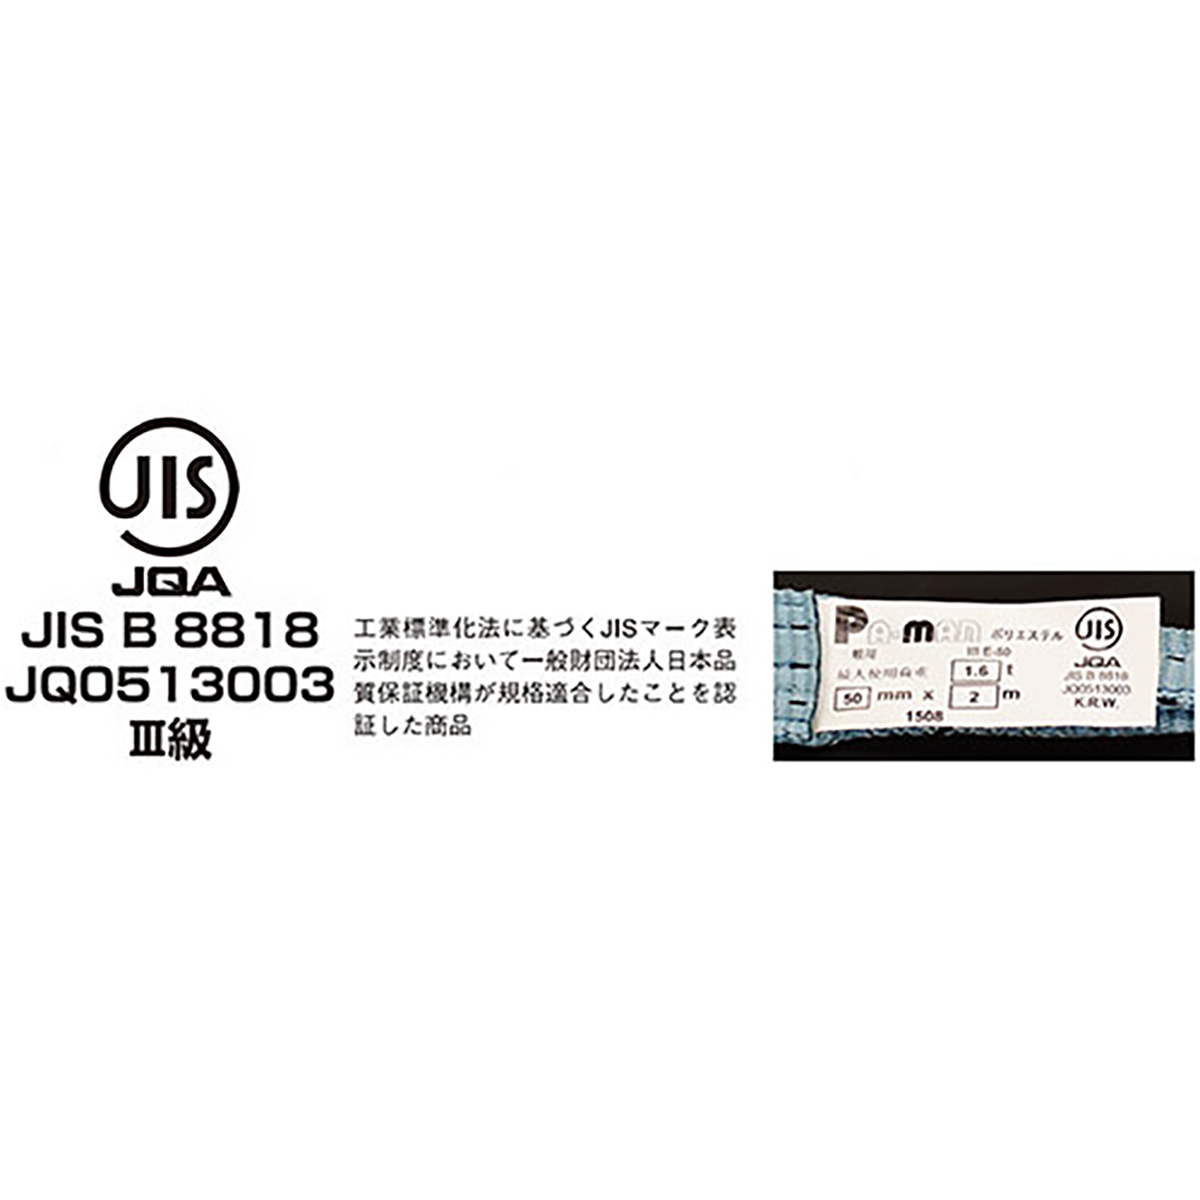 ポリベルトスリング JIS III級 ソフト面付 巾35mm 1m 1本